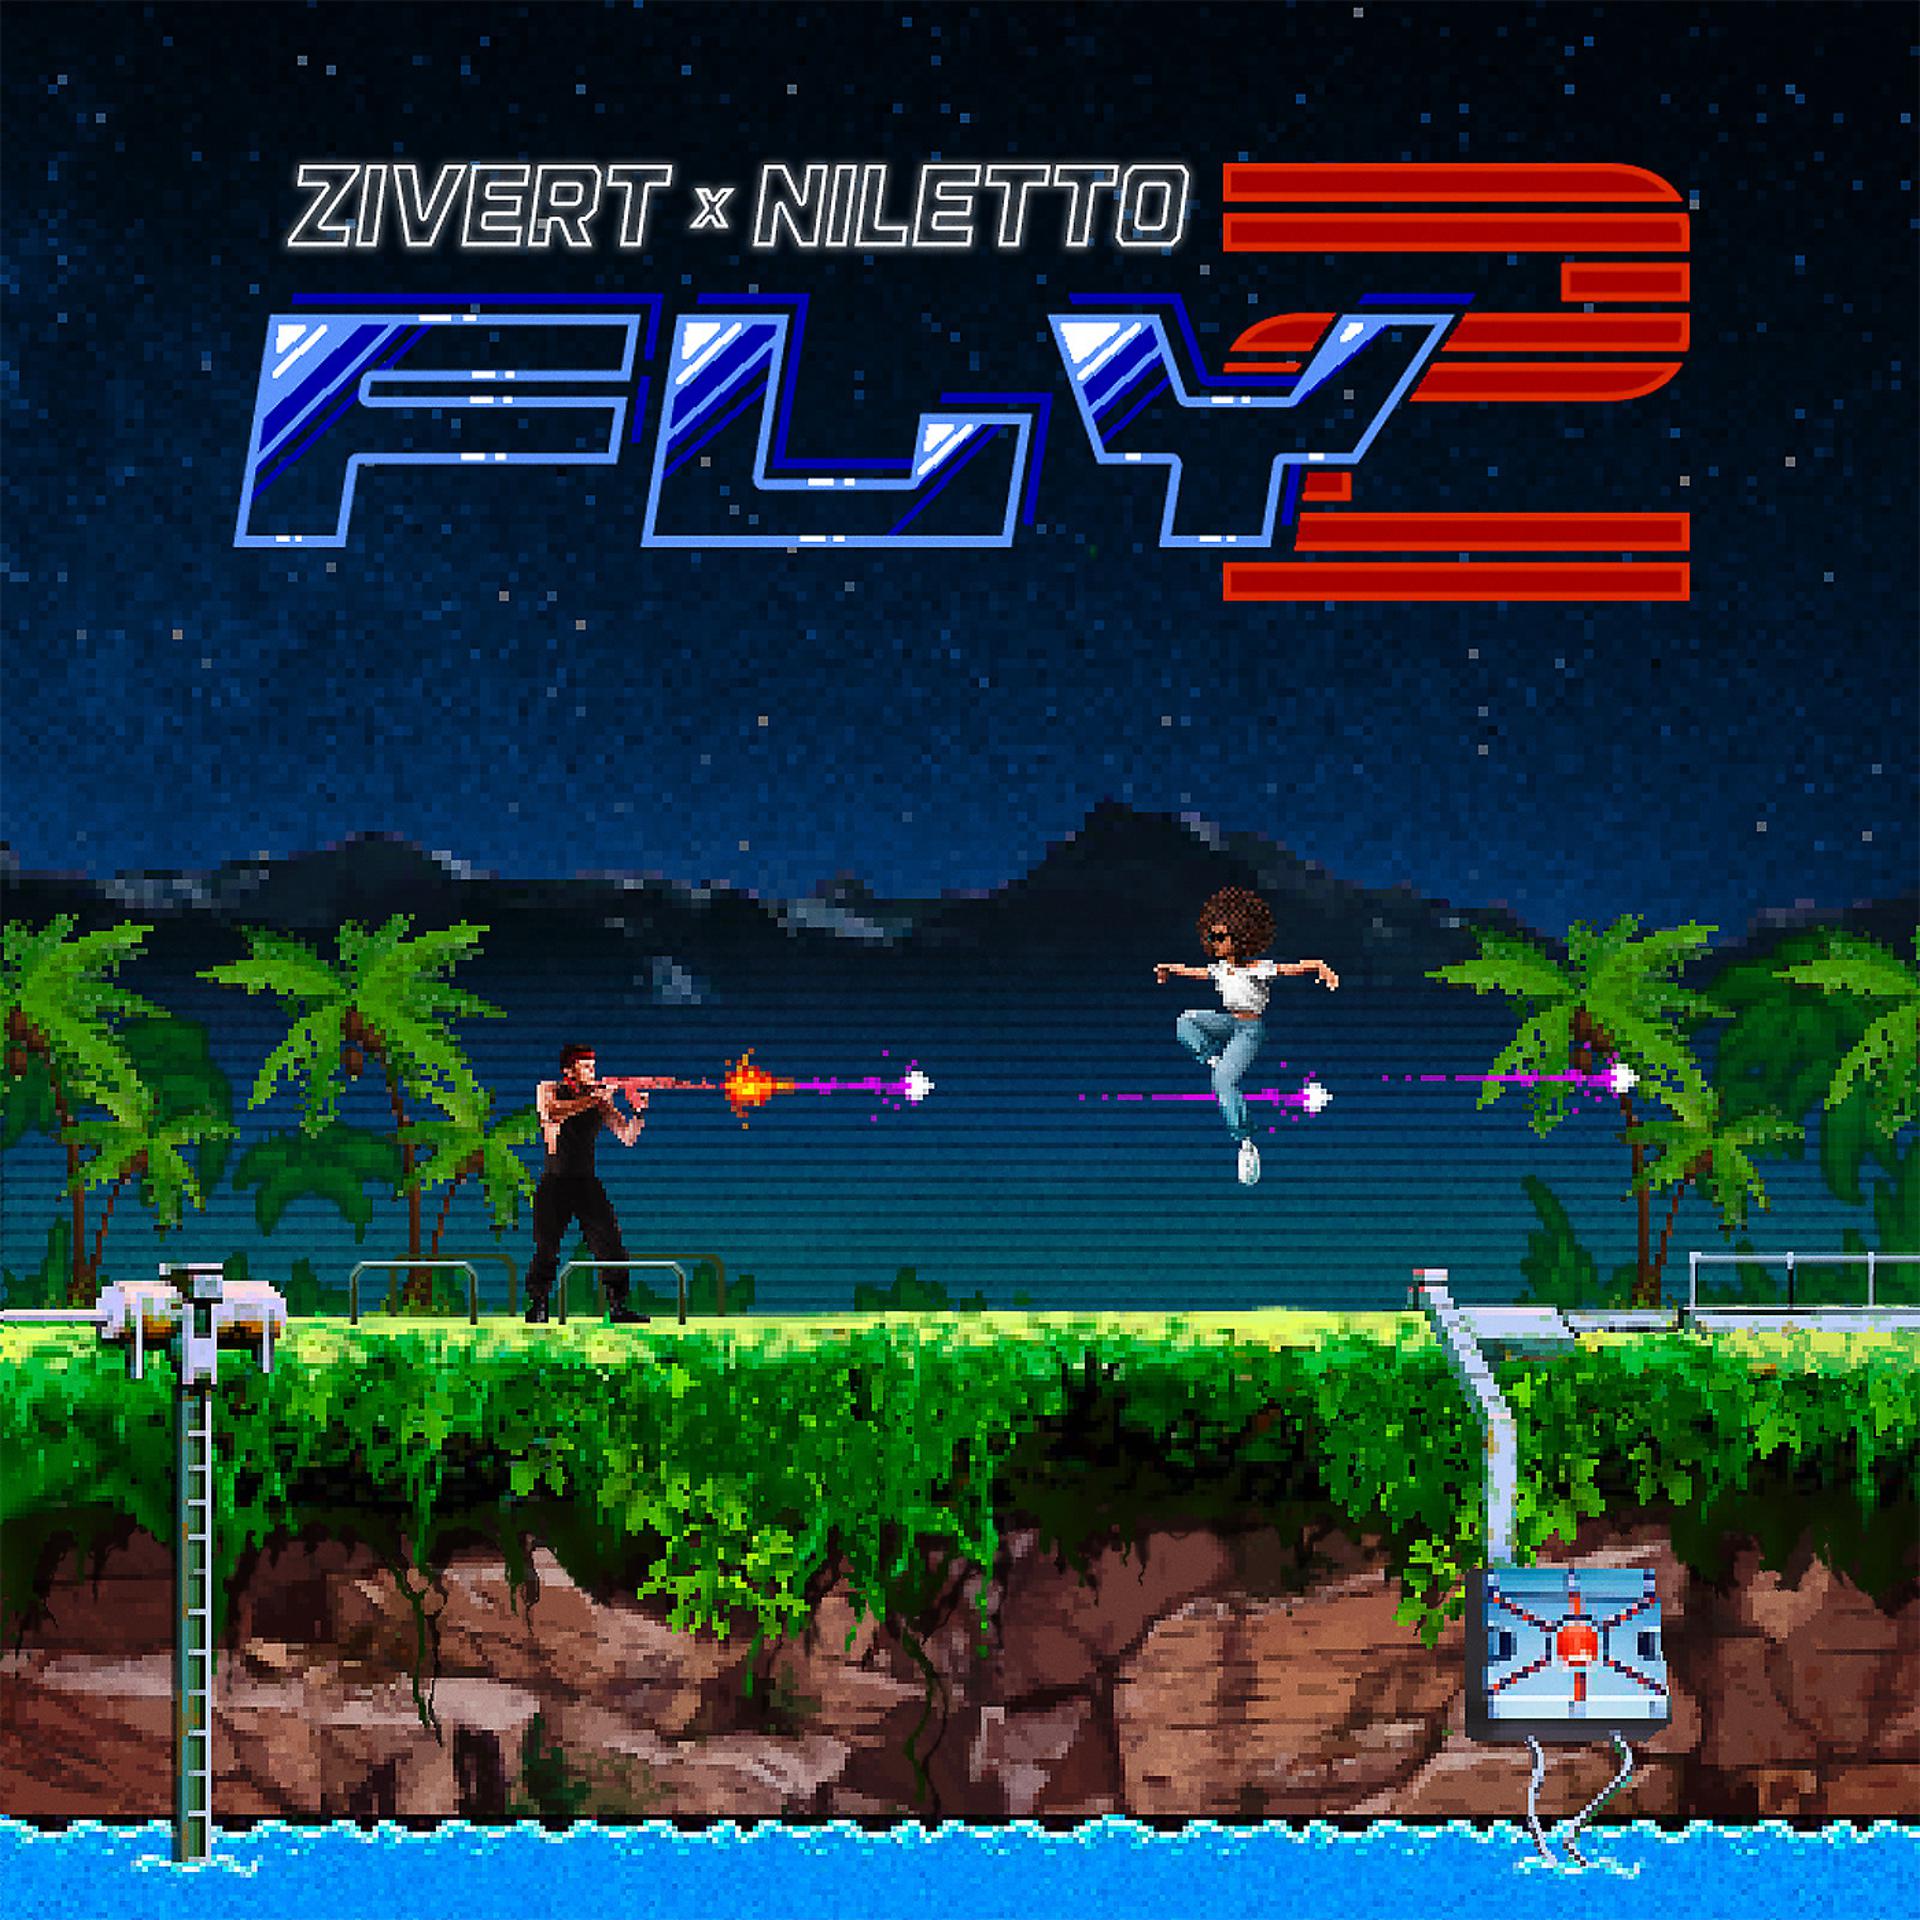 Постер альбома Fly 2